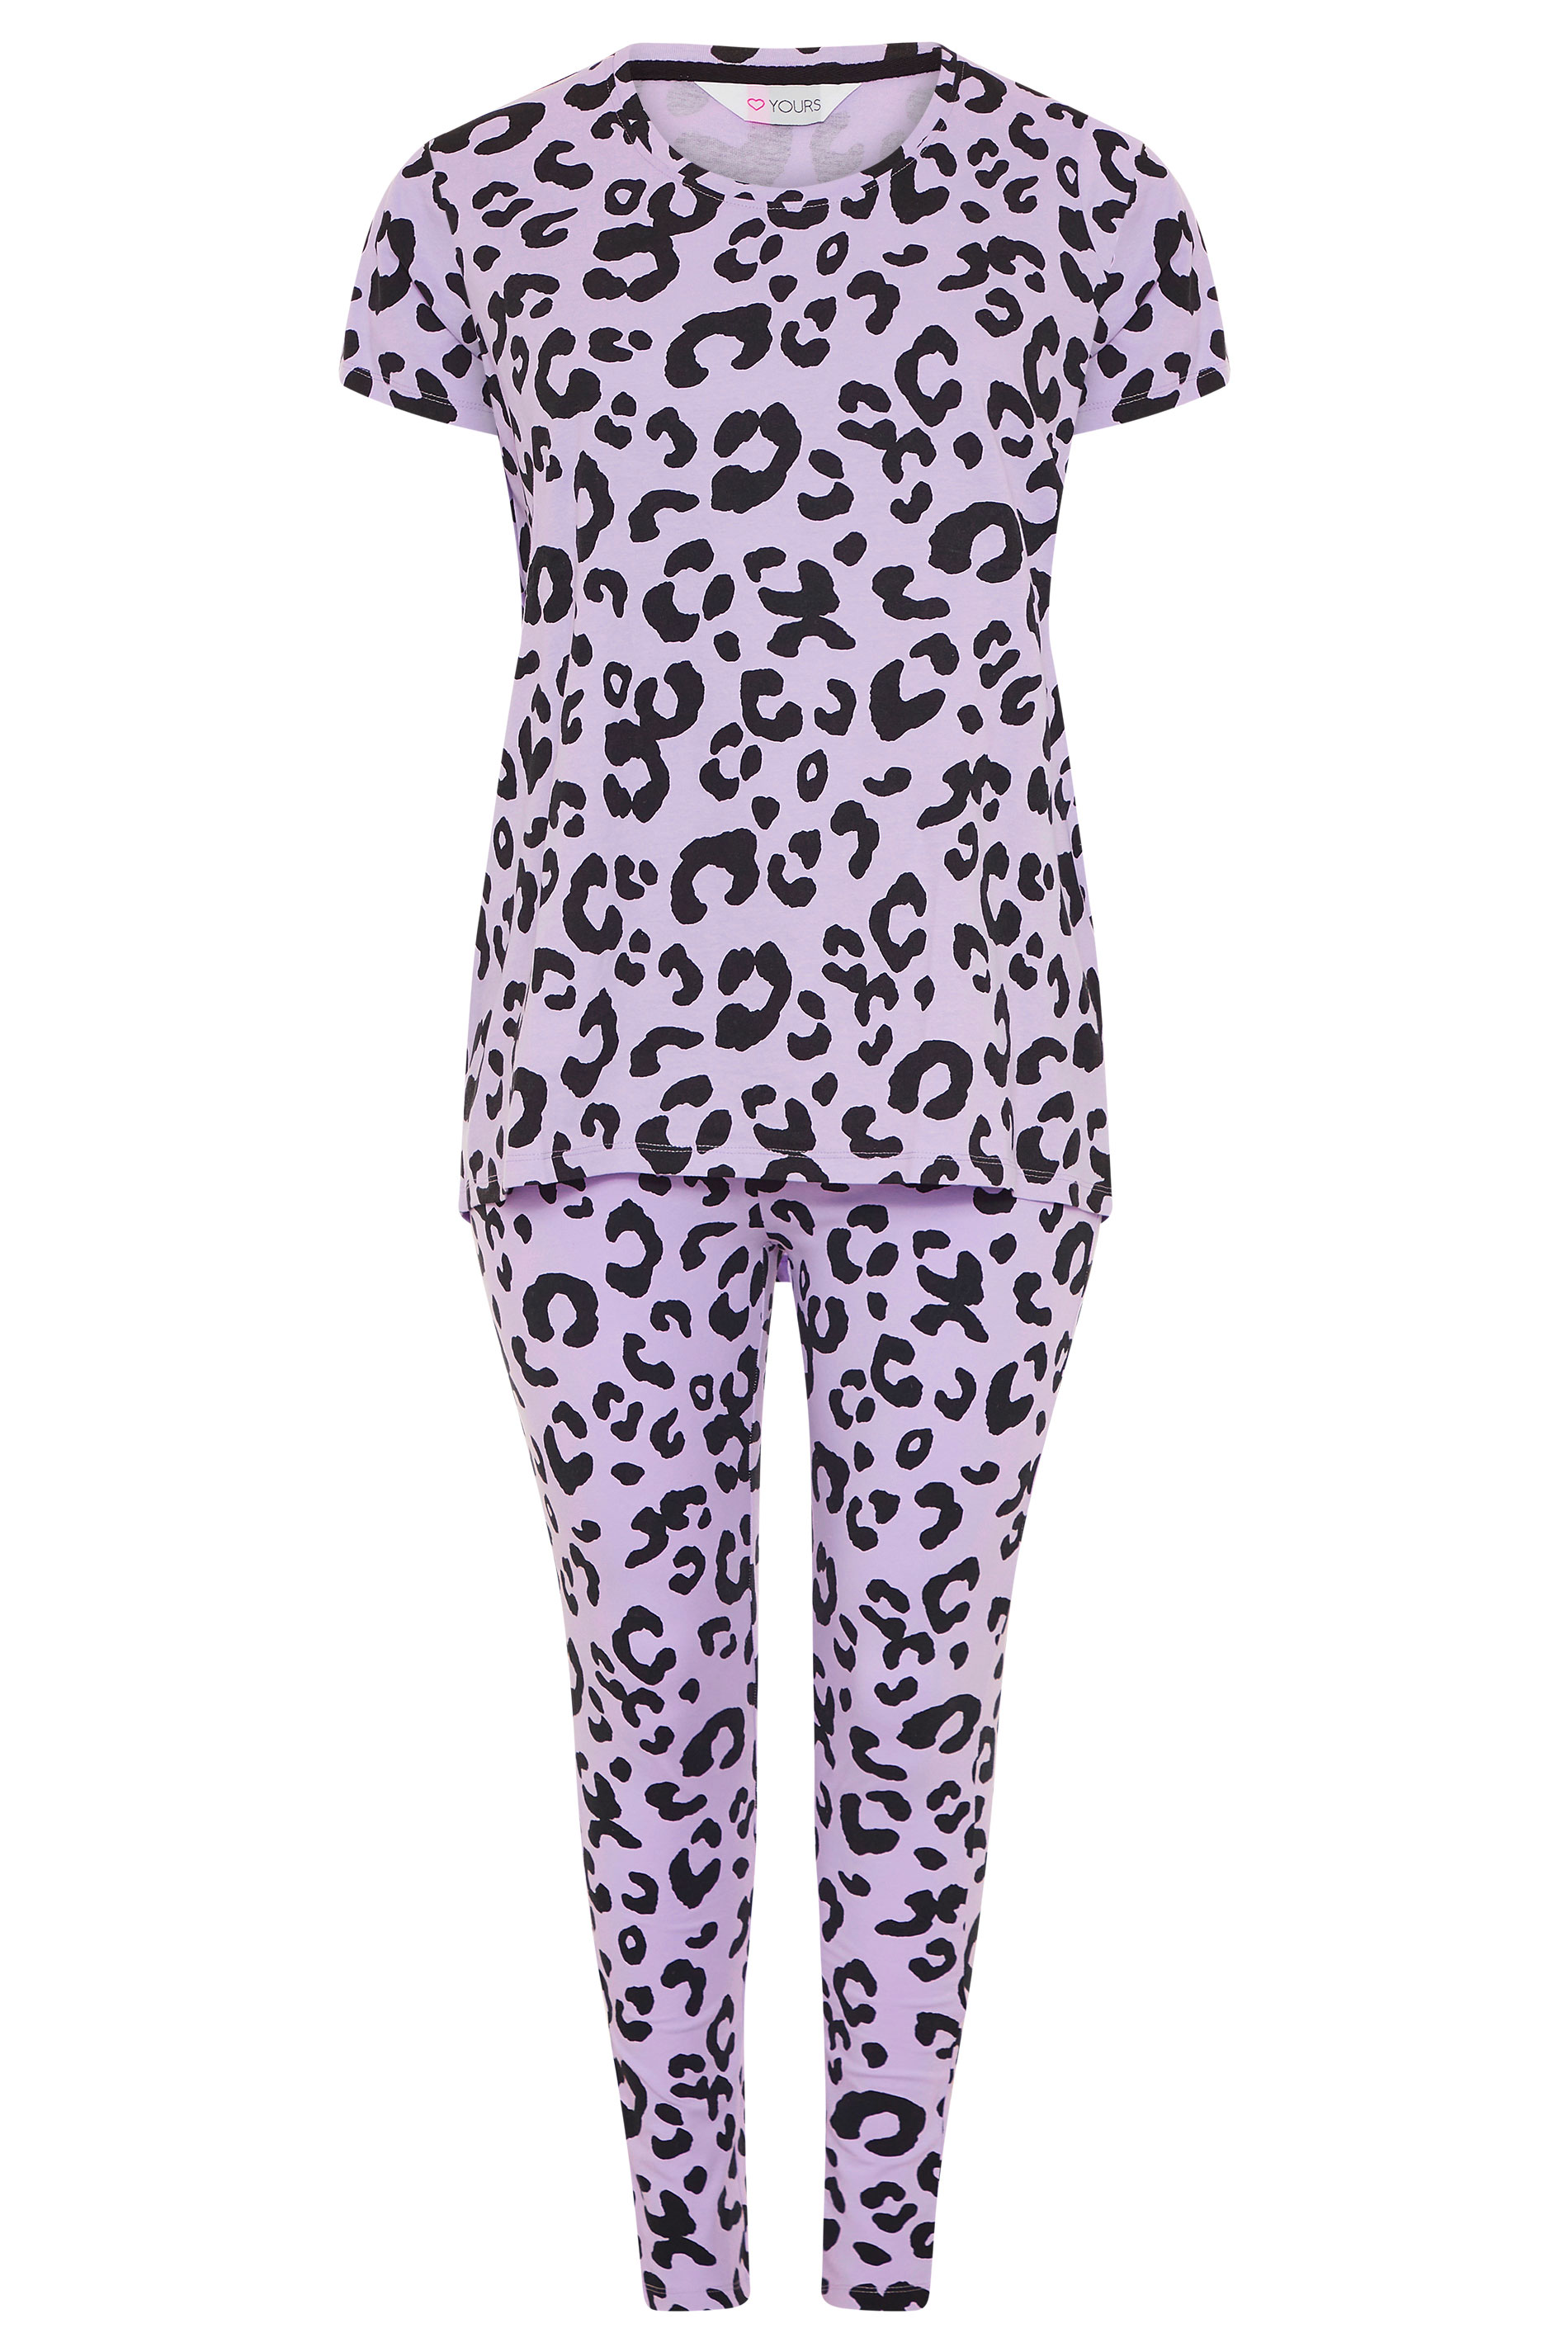 Purple Oversized Animal Print Pyjama Set | Yours Clothing